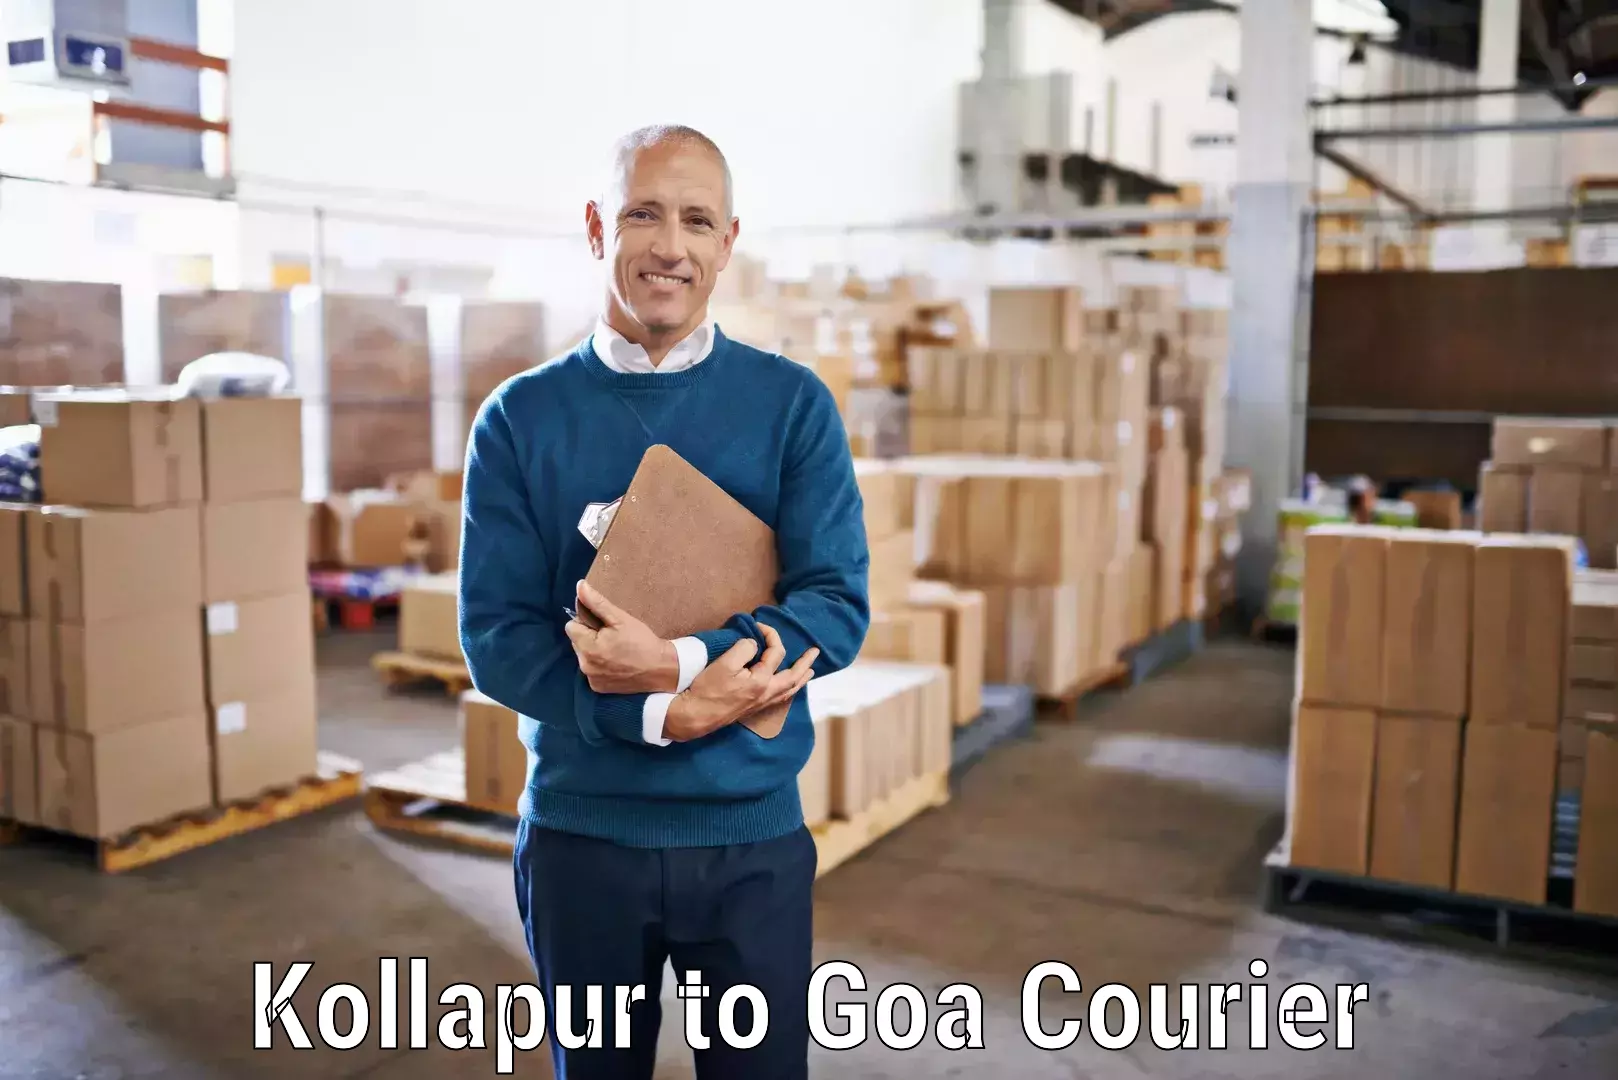 Seamless shipping service Kollapur to Goa